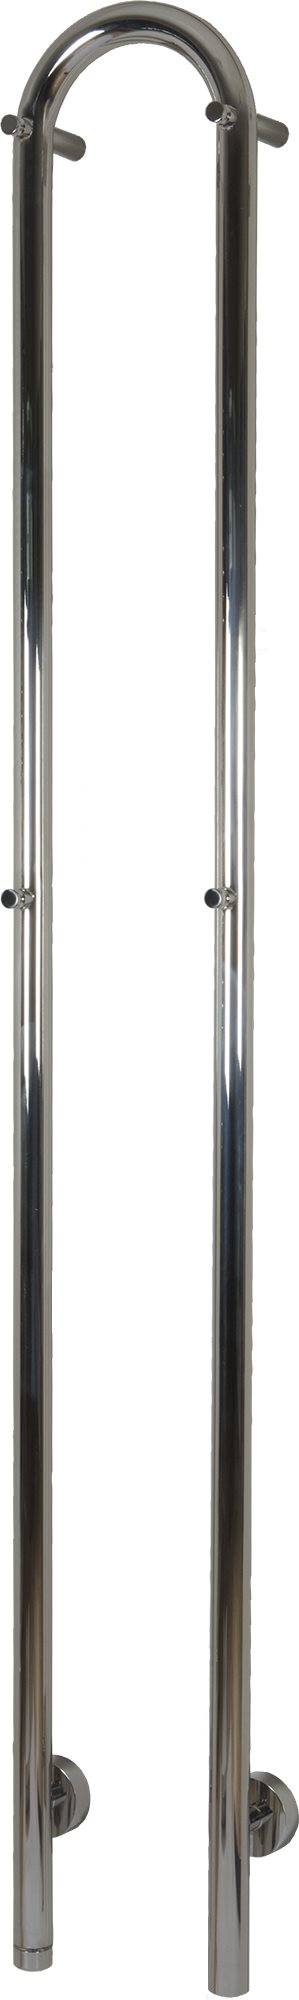 Kriss Duo El-håndklædevarmer 1480x190 mm poleret rustfrit stål 